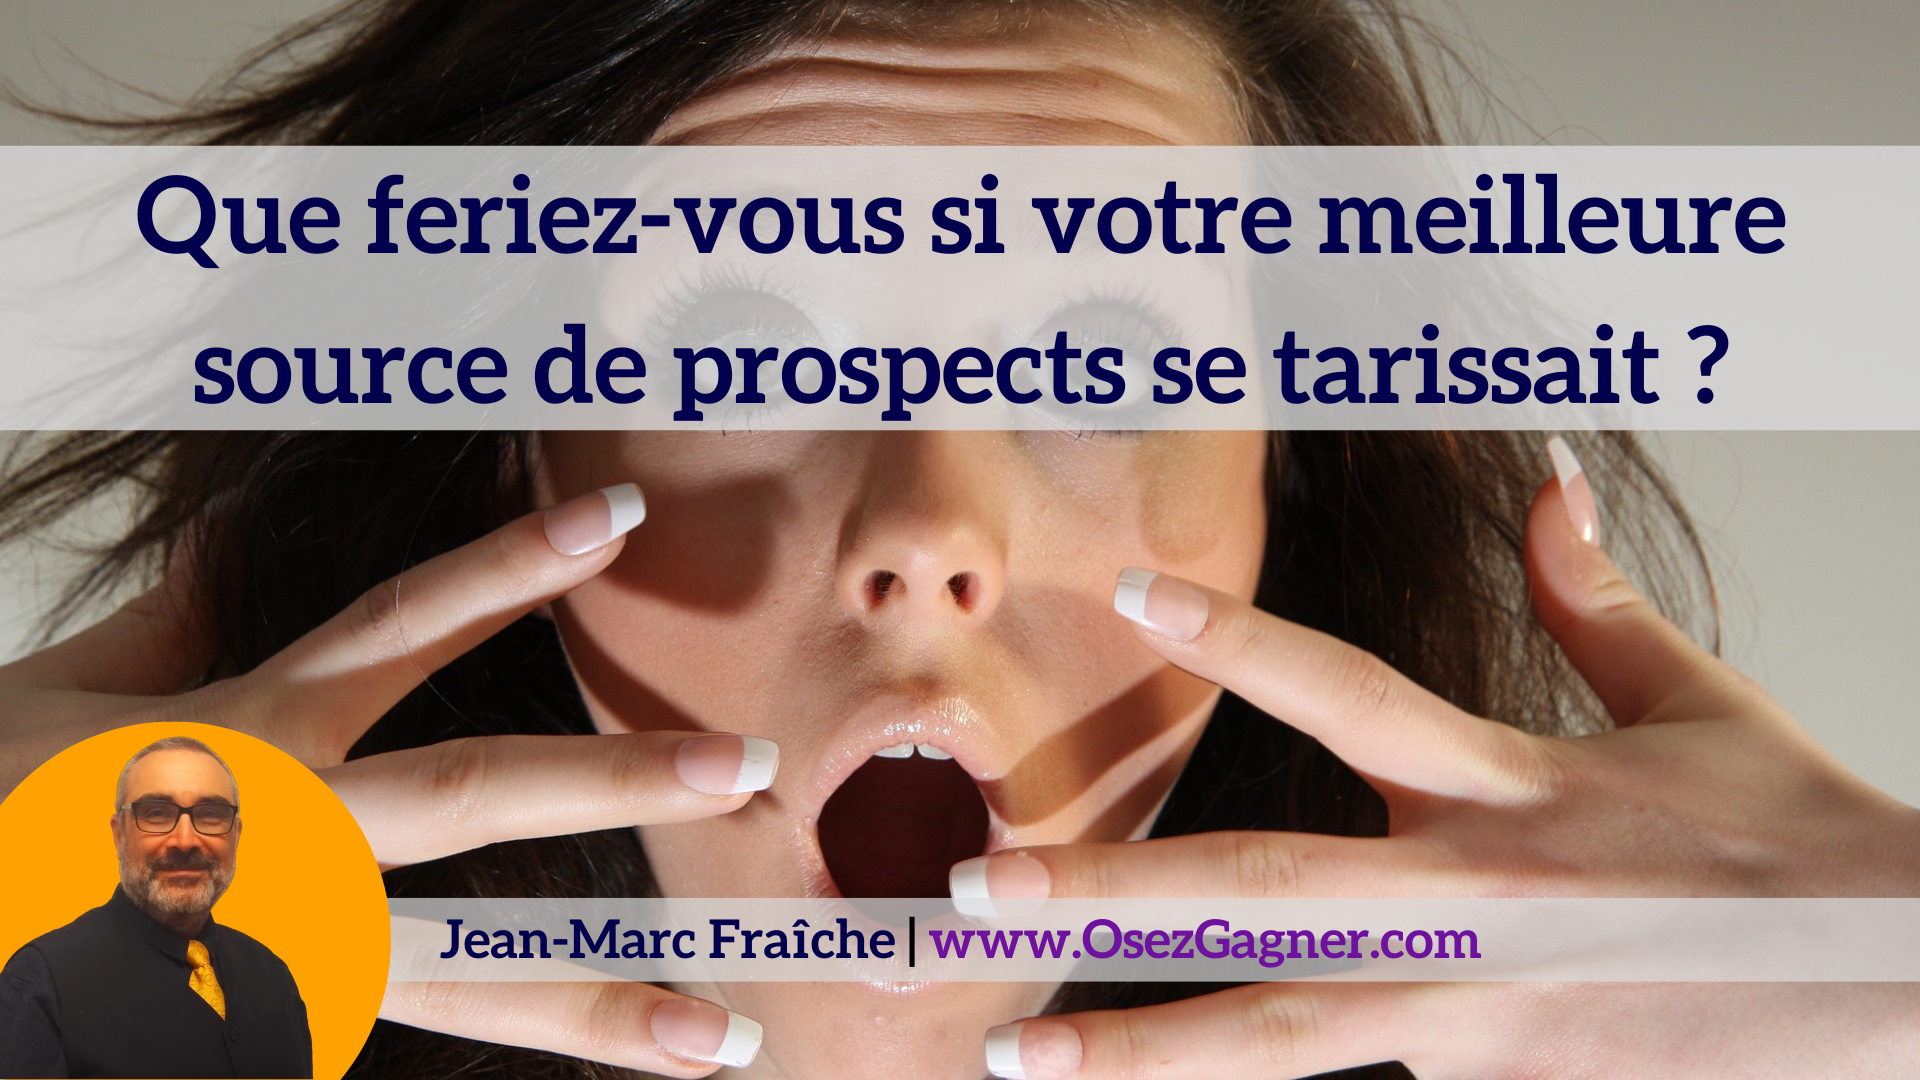 Source-de-prospects-se-tarissait-Jean-Marc-Fraiche-OsezGagner.com